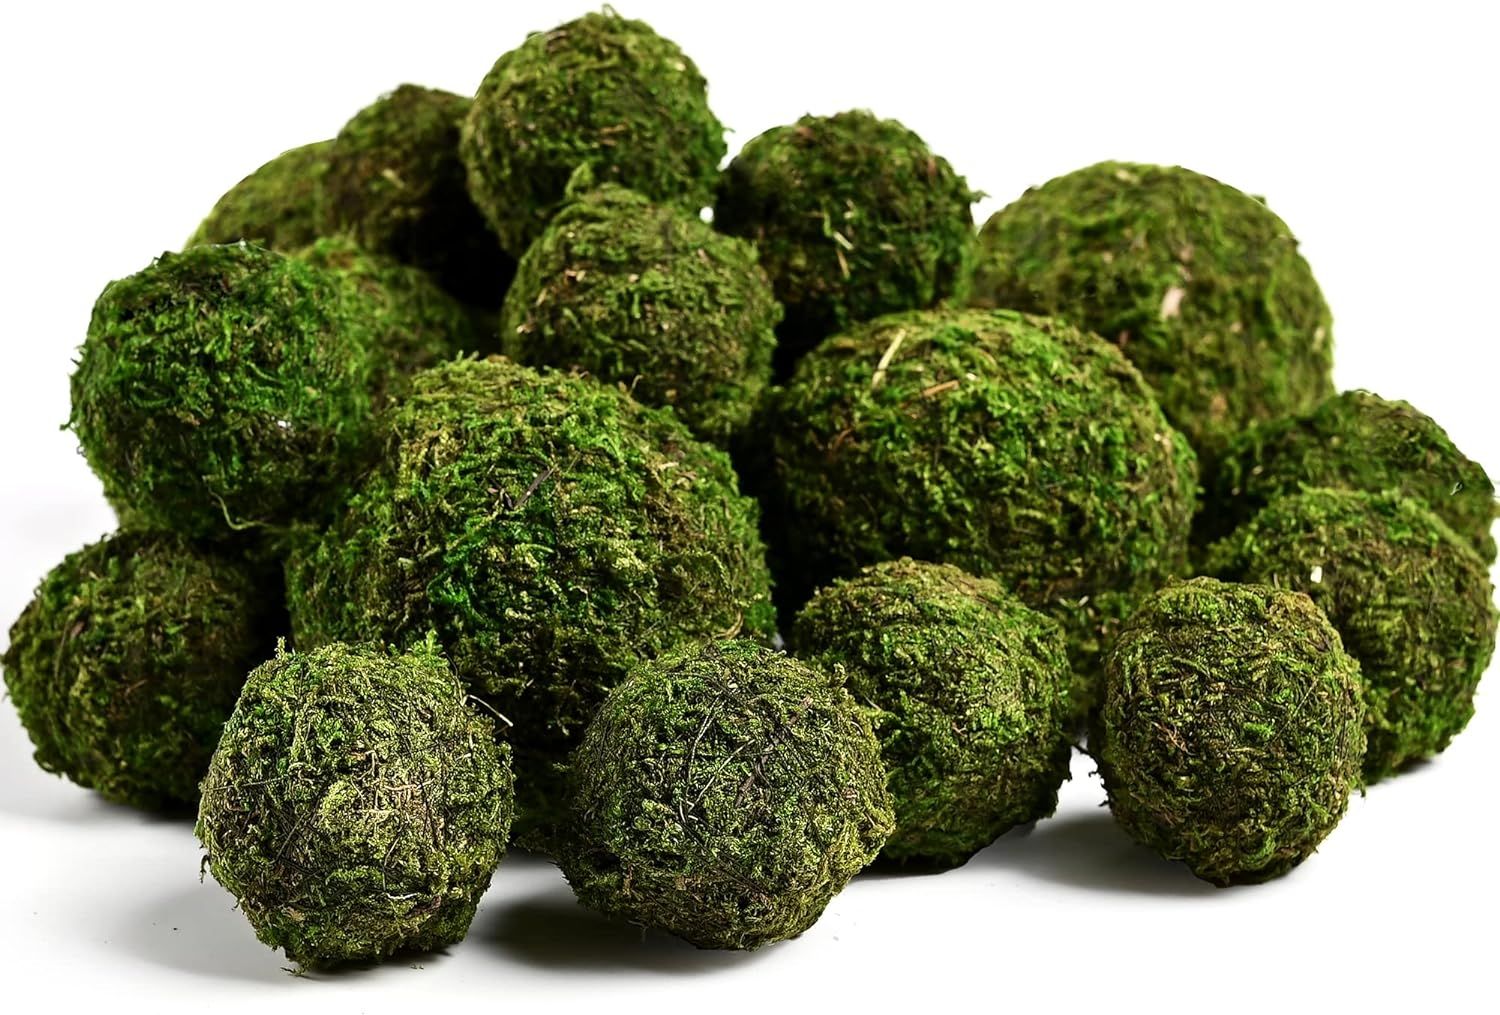 Usmola 18pcs Fake Moss Balls, 6pcs 3.2" Faux Green Balls + 12pcs 2" Artificial Moss Decorative Ba... | Amazon (US)